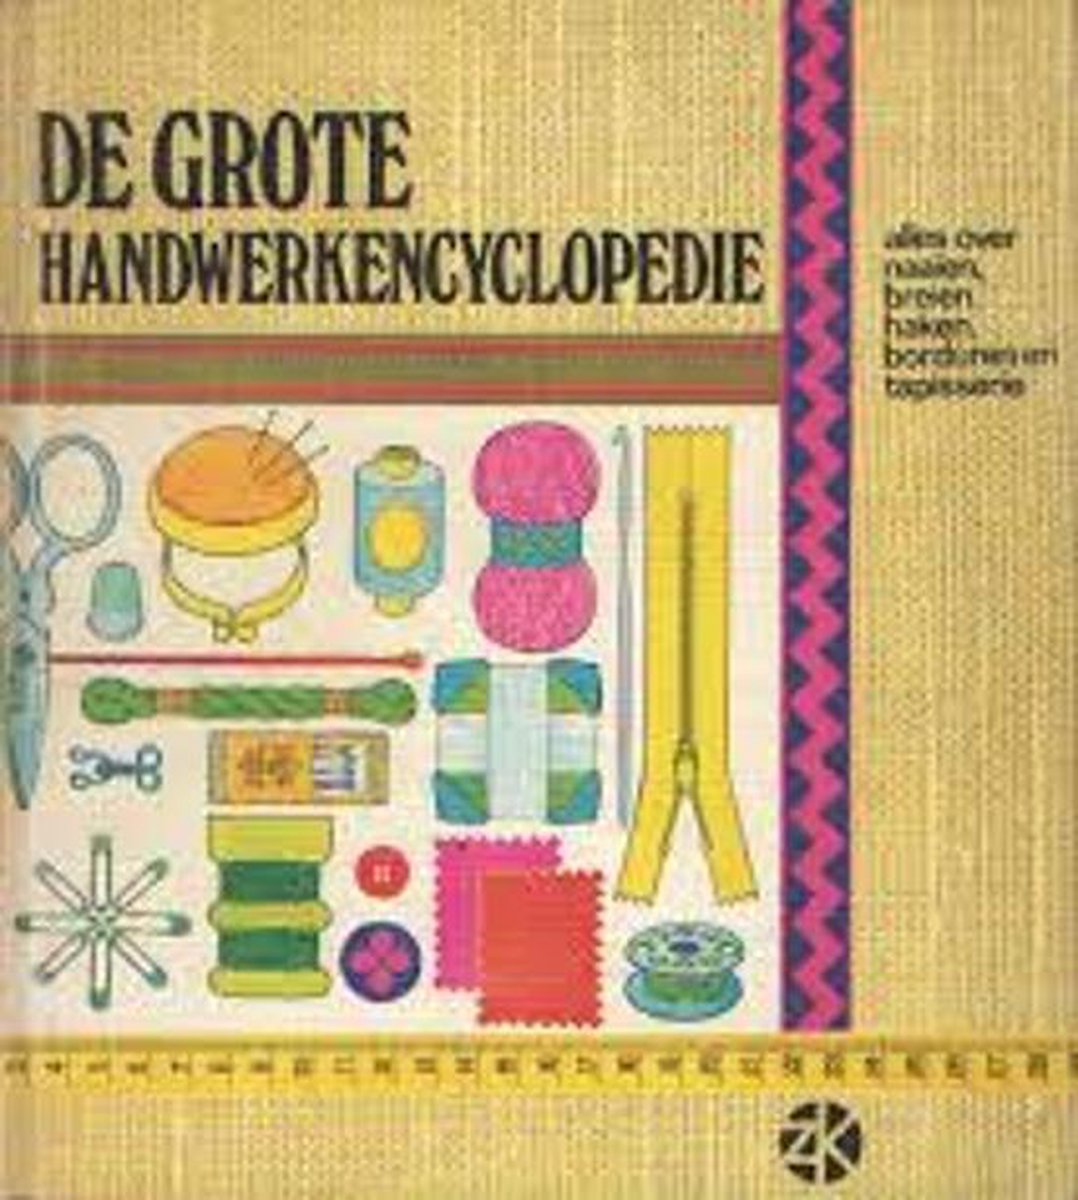 Grote handwerkencyclopedie - Morand